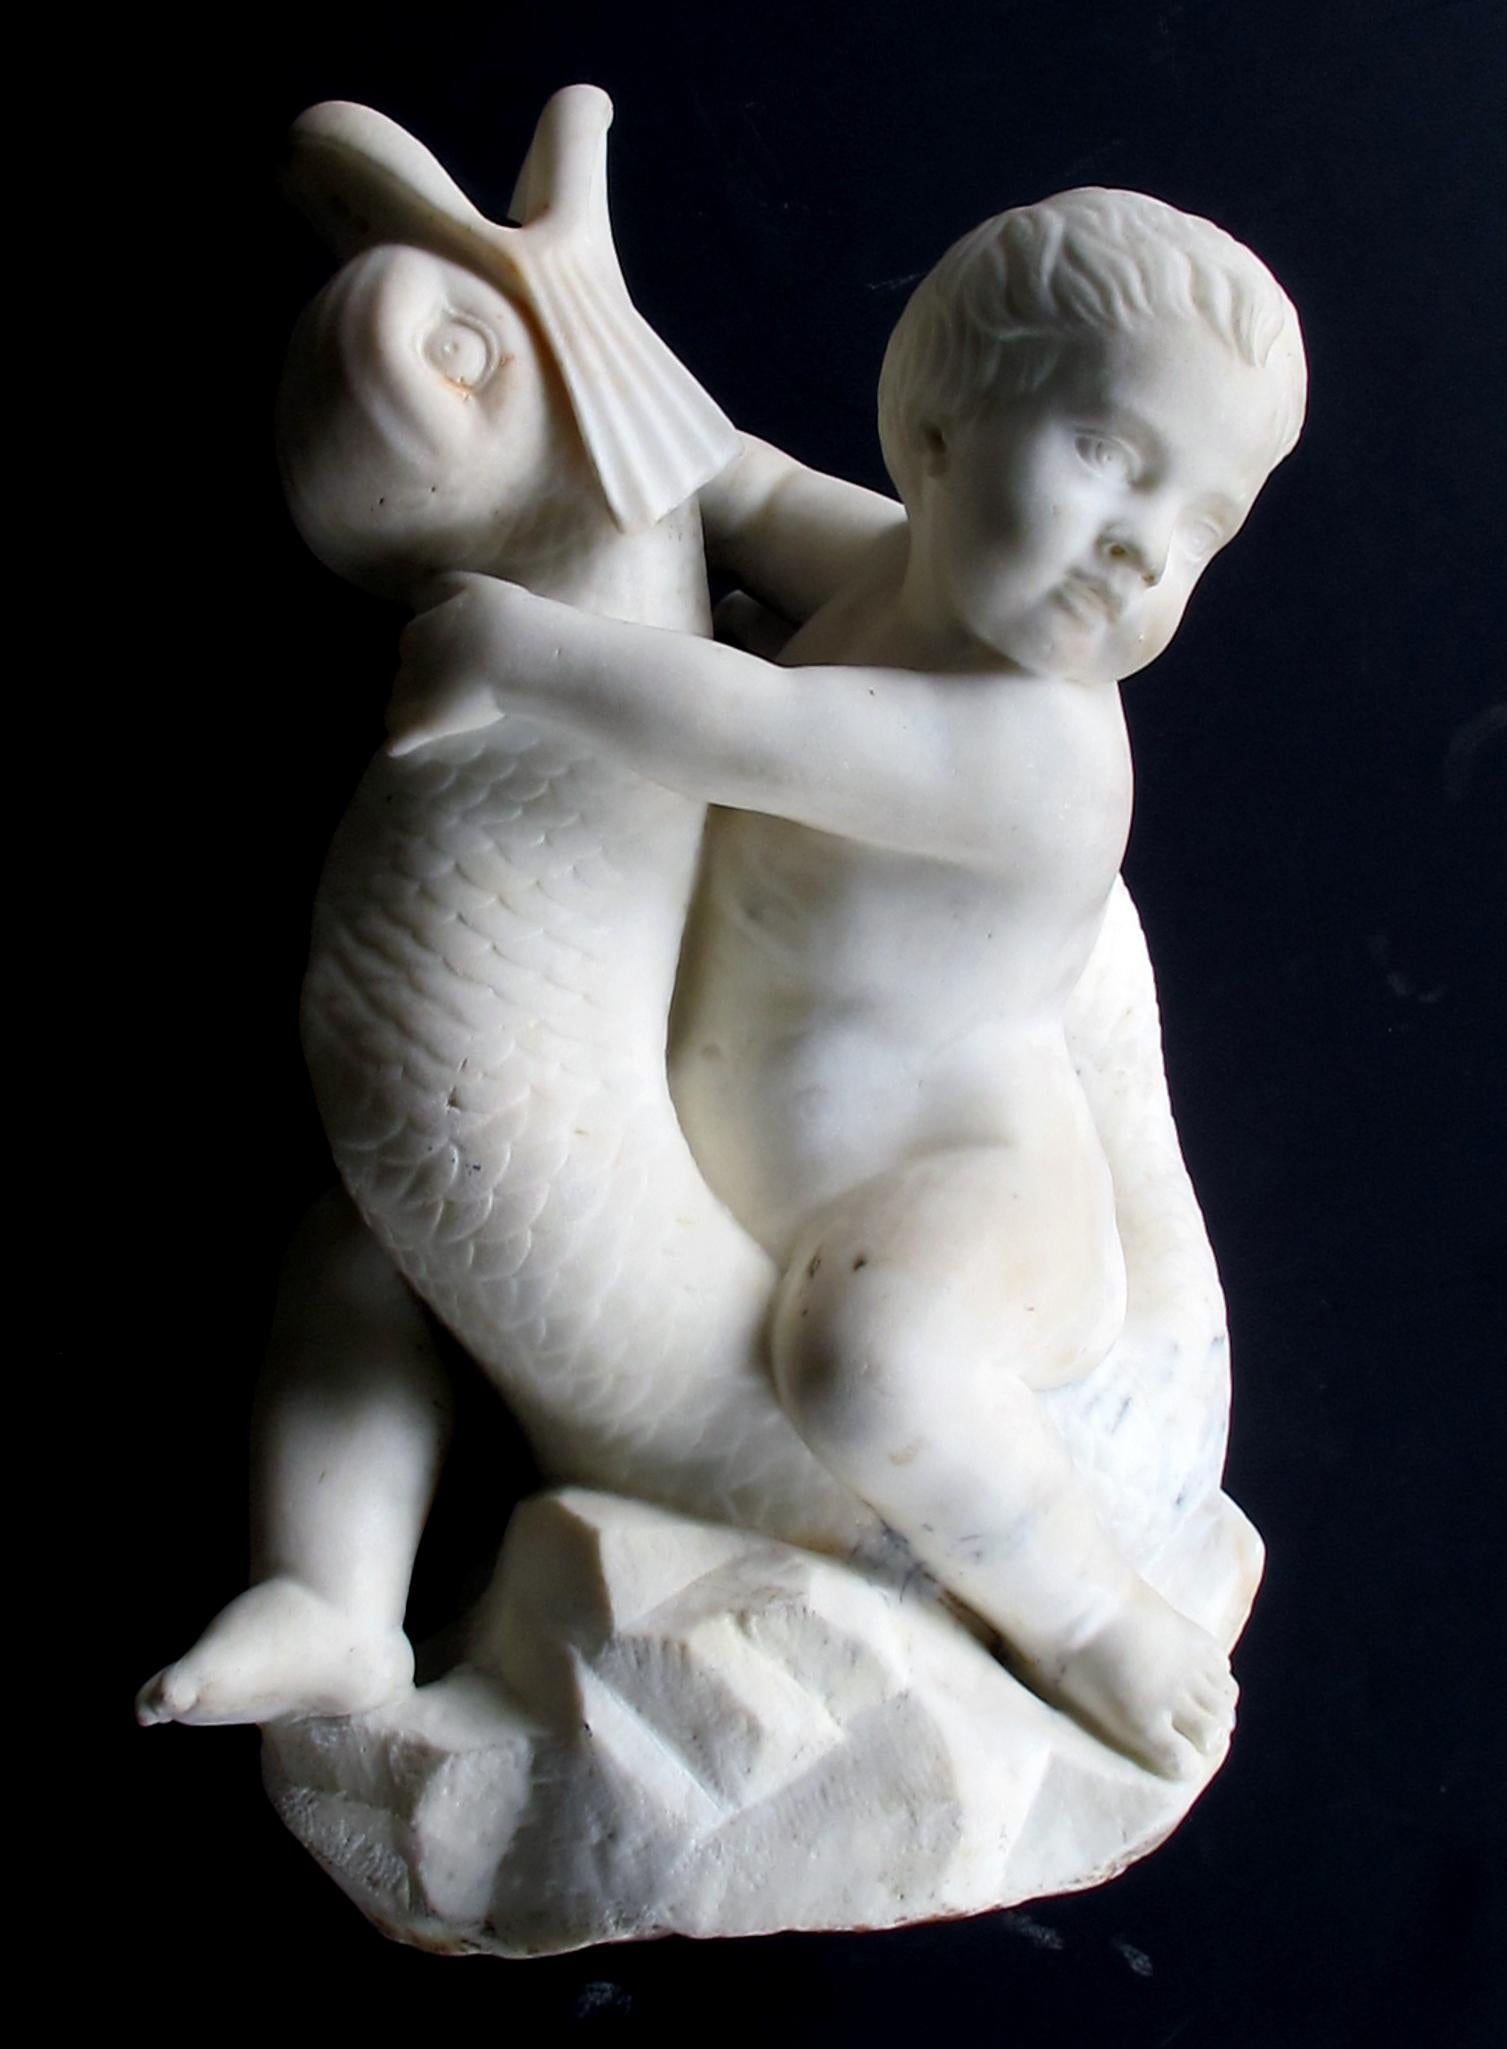 Ein ausdrucksstarker und gut geschnitzter Nischenbrunnen aus Carrara-Marmor aus dem italienischen Rokoko-Revival, der eine auf einem Delphin sitzende Putte darstellt; die verspielte pummelige Putte hält sich mit dem Kopf an einem sich windenden